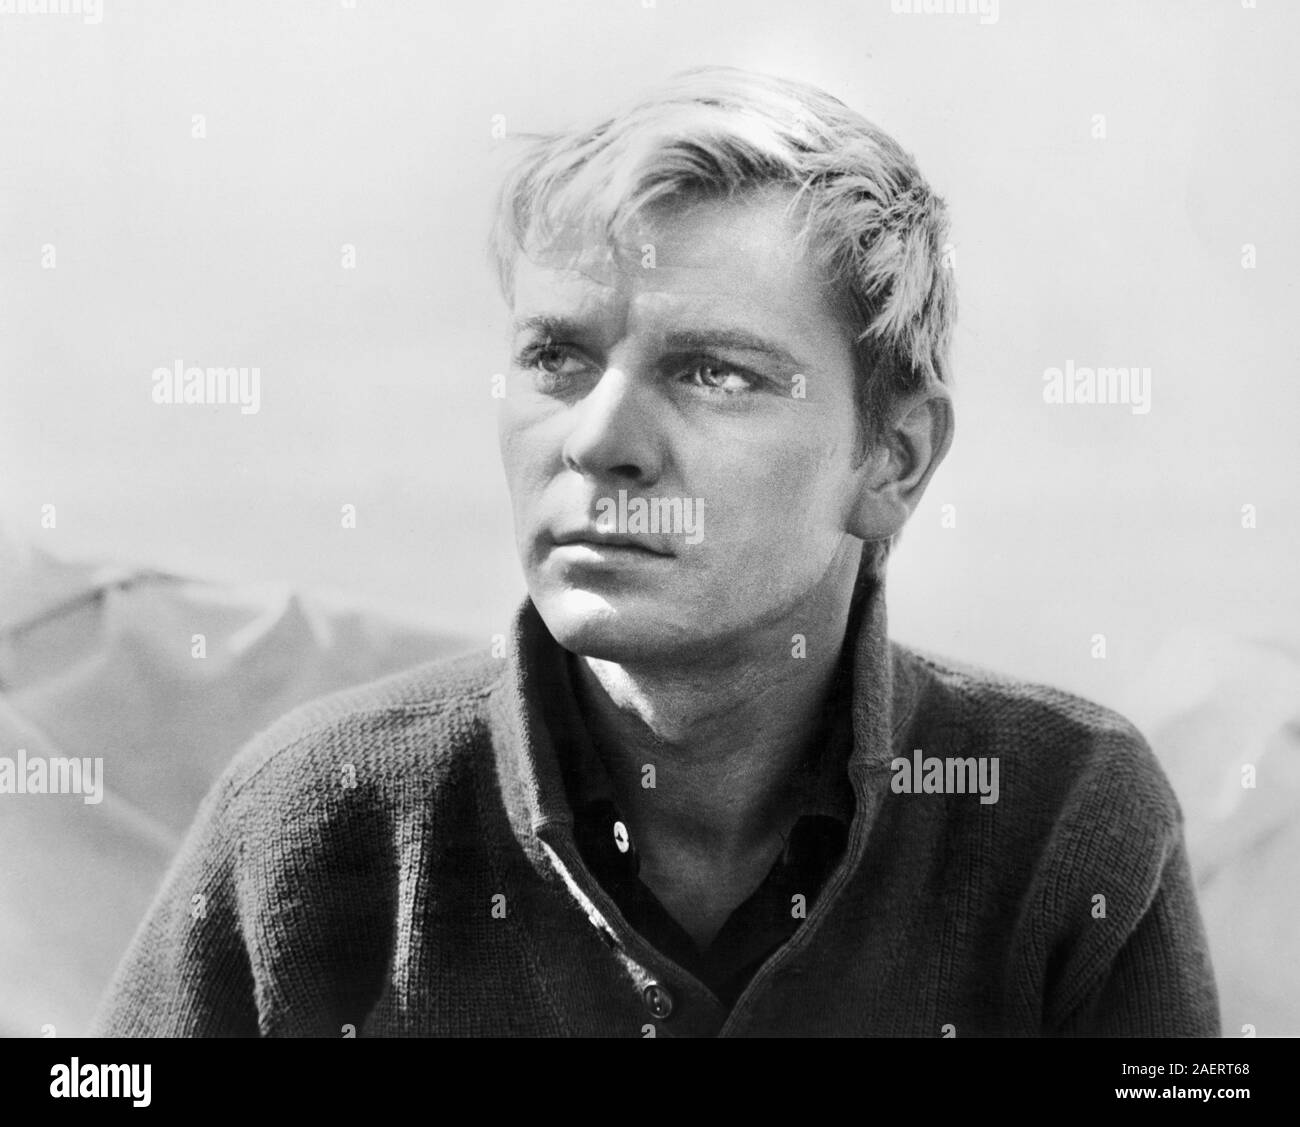 Zygmunt Malanowicz, Ritratto di pubblicità per i Film polacco, 'coltello nell'acqua" (Polacco: N02 w Wadzie), diretto da Roman Polanski, Kanawha Film, 1962 Foto Stock